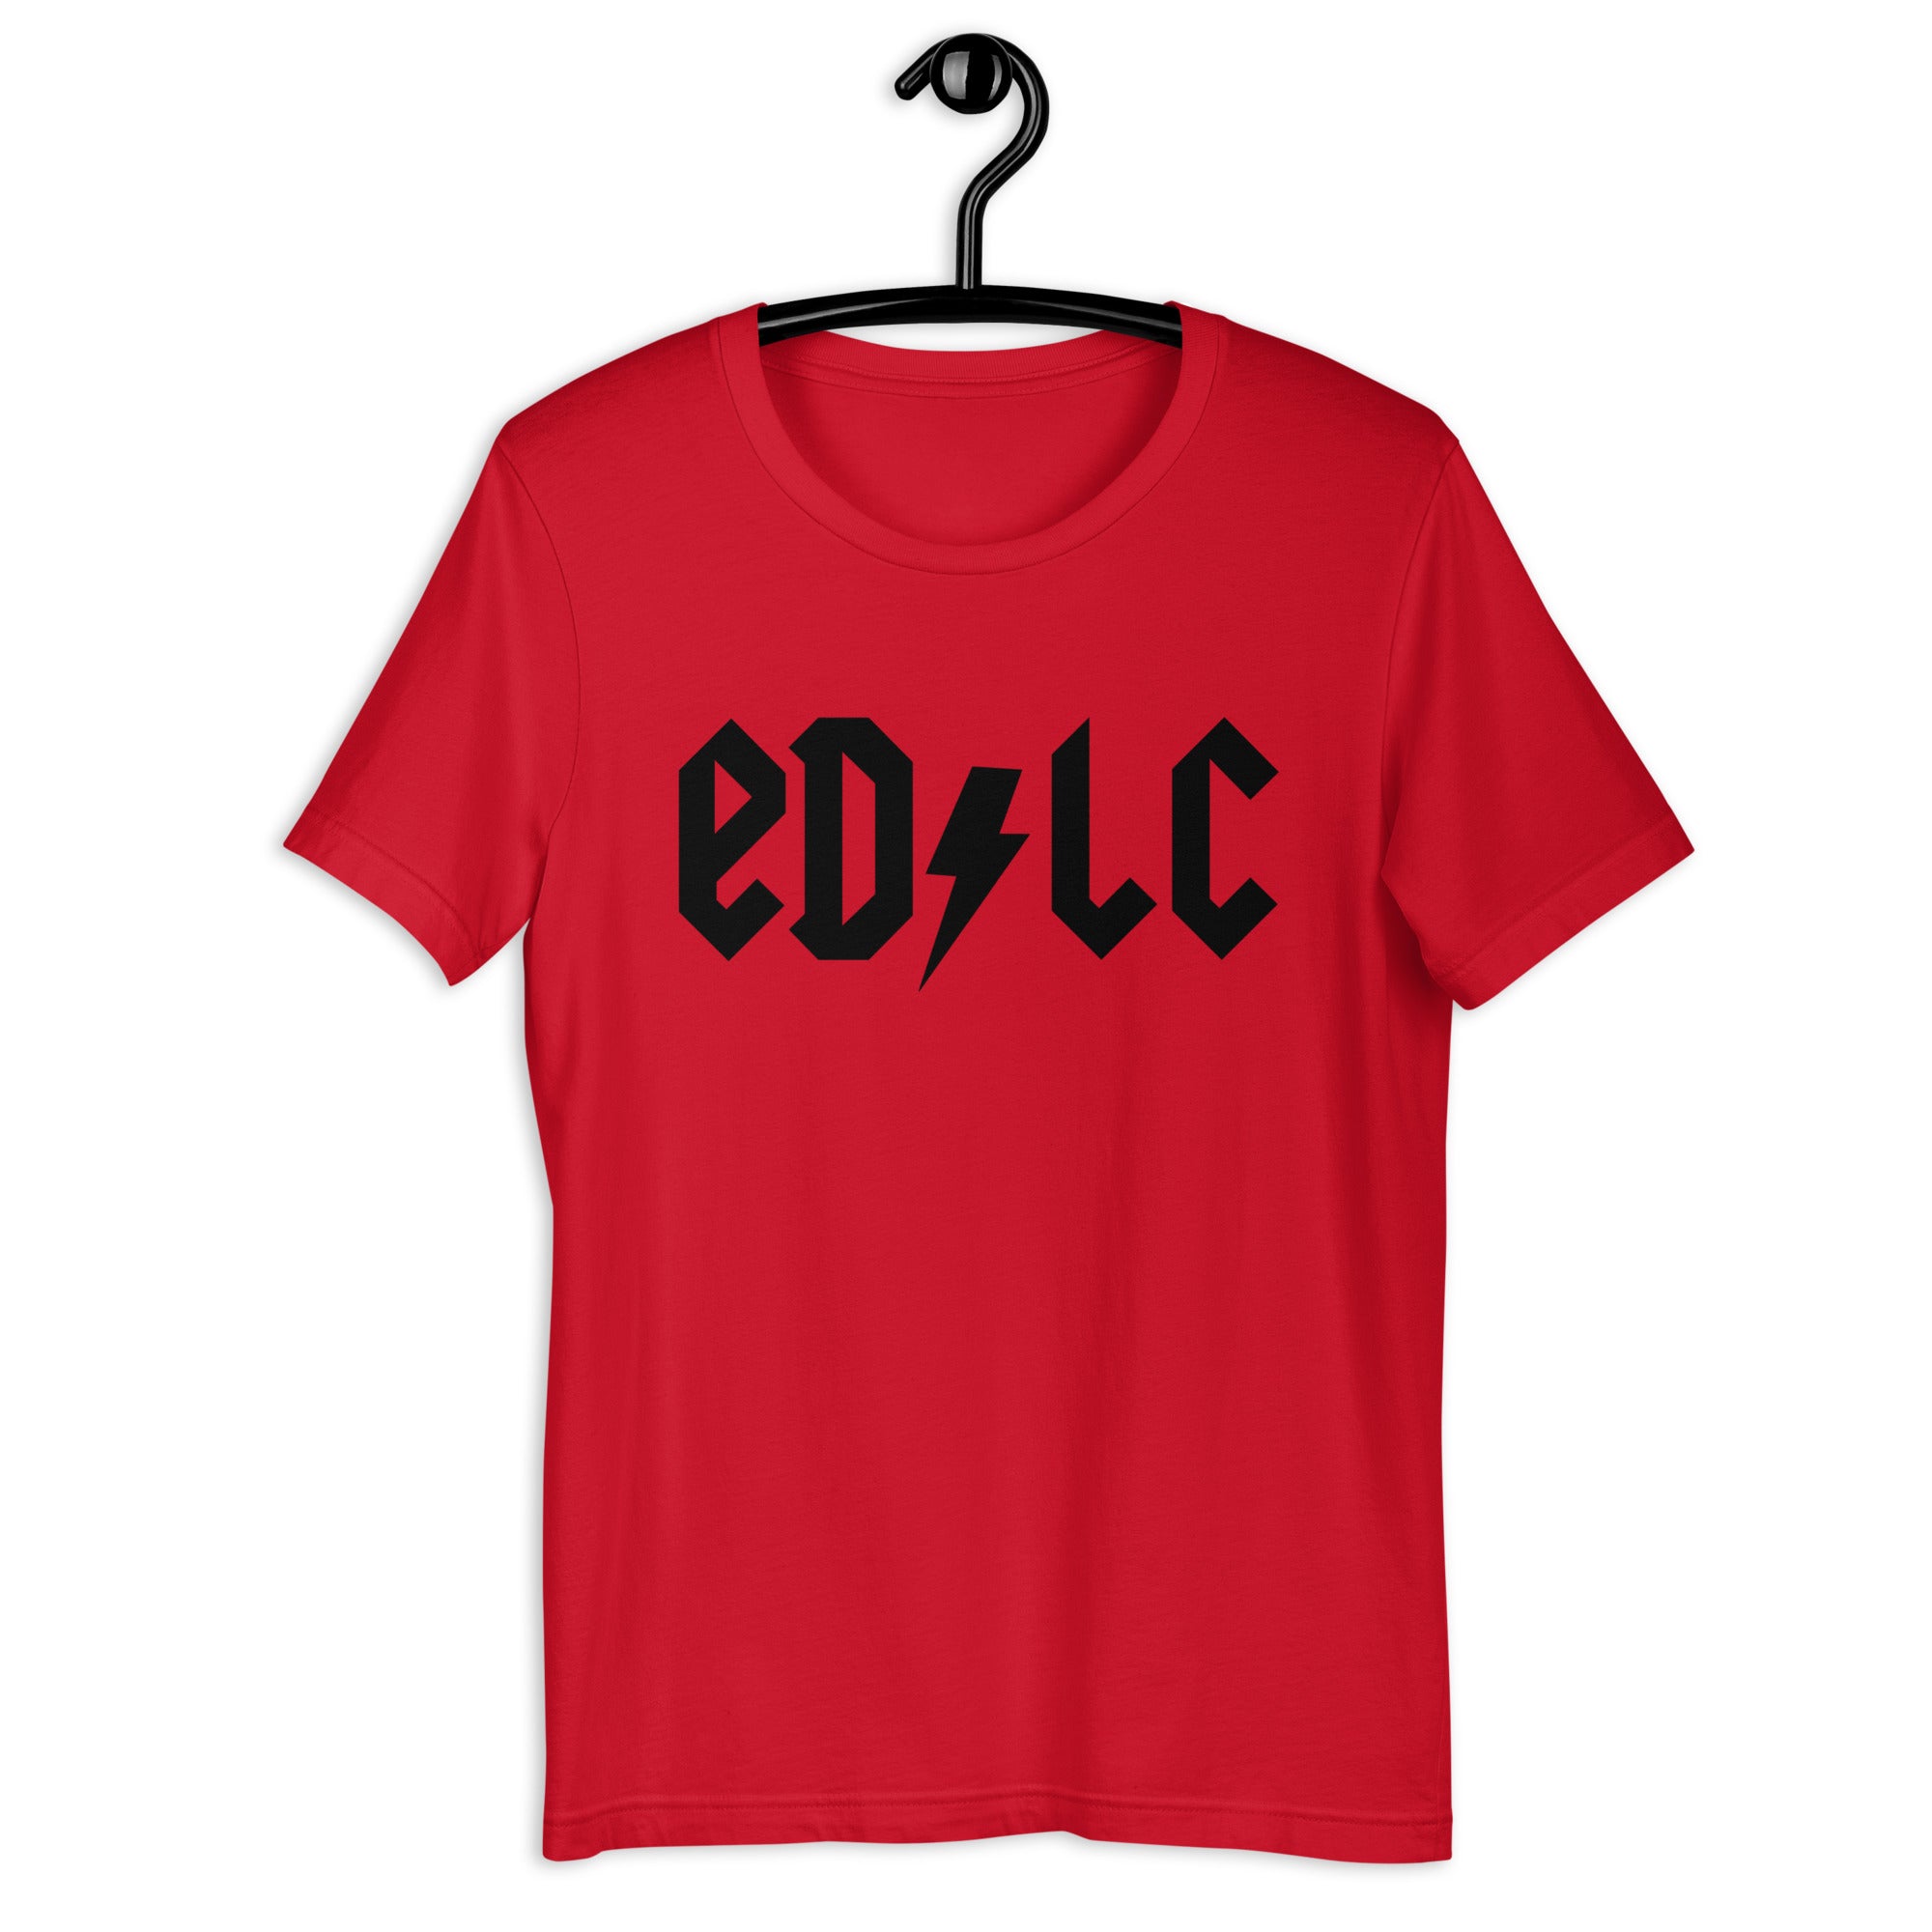 ELDC: Electric